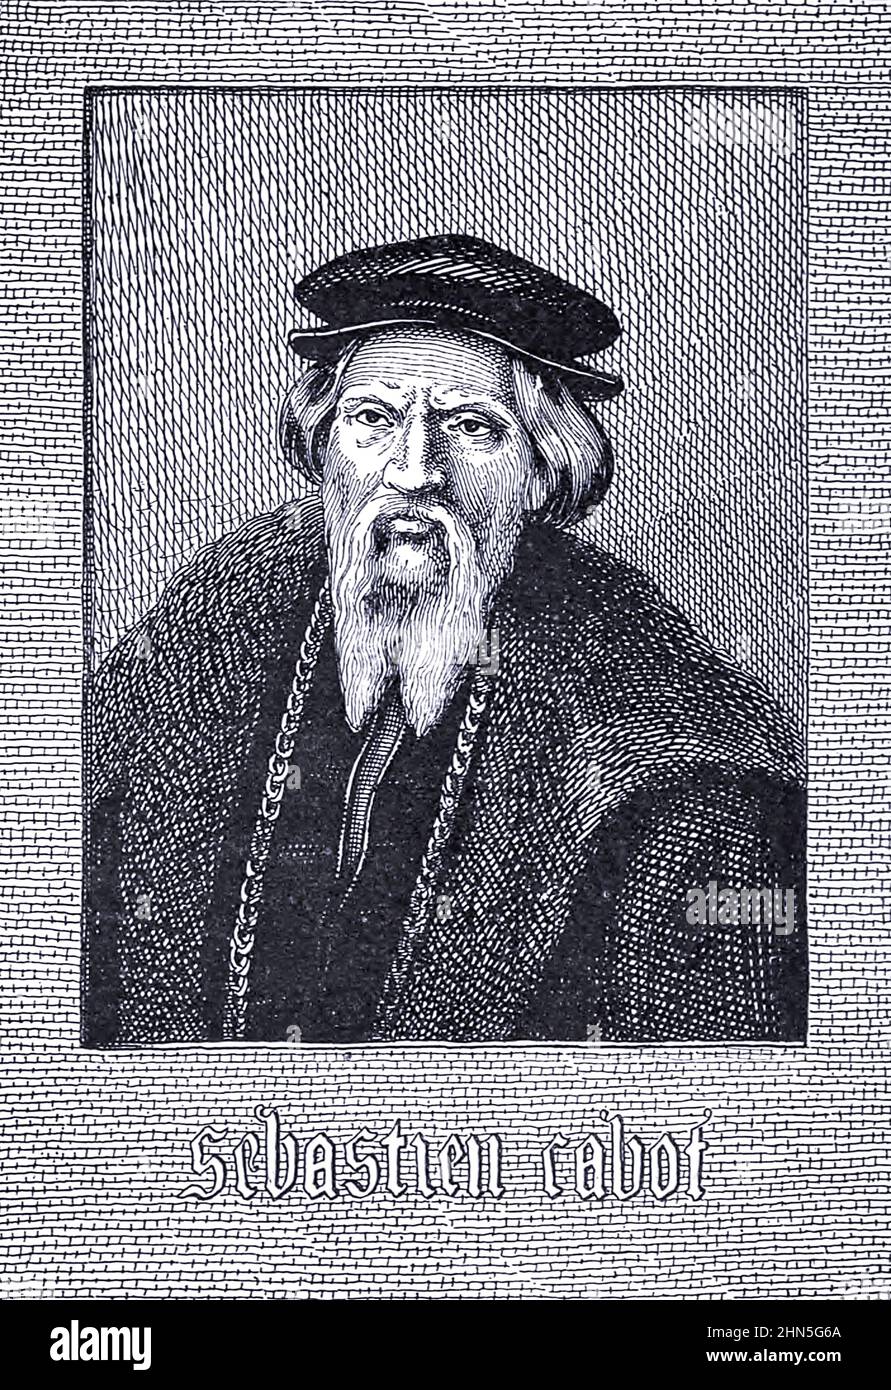 Sebastian Cabot (1474 – c.Décembre 1557) était un explorateur vénitien, Cabot a effectué ses propres voyages de découverte, cherchant le passage du Nord-Ouest à travers l'Amérique du Nord au nom de l'Angleterre.Il a ensuite navigué pour l'Espagne, se rendant en Amérique du Sud, où il a exploré le Rio de la Plata et a établi deux nouveaux forts. De l'exploration du monde, a célébré les voyages et les voyageurs, a célébré les voyages par Jules Verne non-fiction.Publié en trois volumes de 1878 à 1880, les voyages et les voyageurs célèbres est une histoire des explorateurs et aventuriers qui ont voyagé jusqu'aux lointains points de la planète, dis Banque D'Images